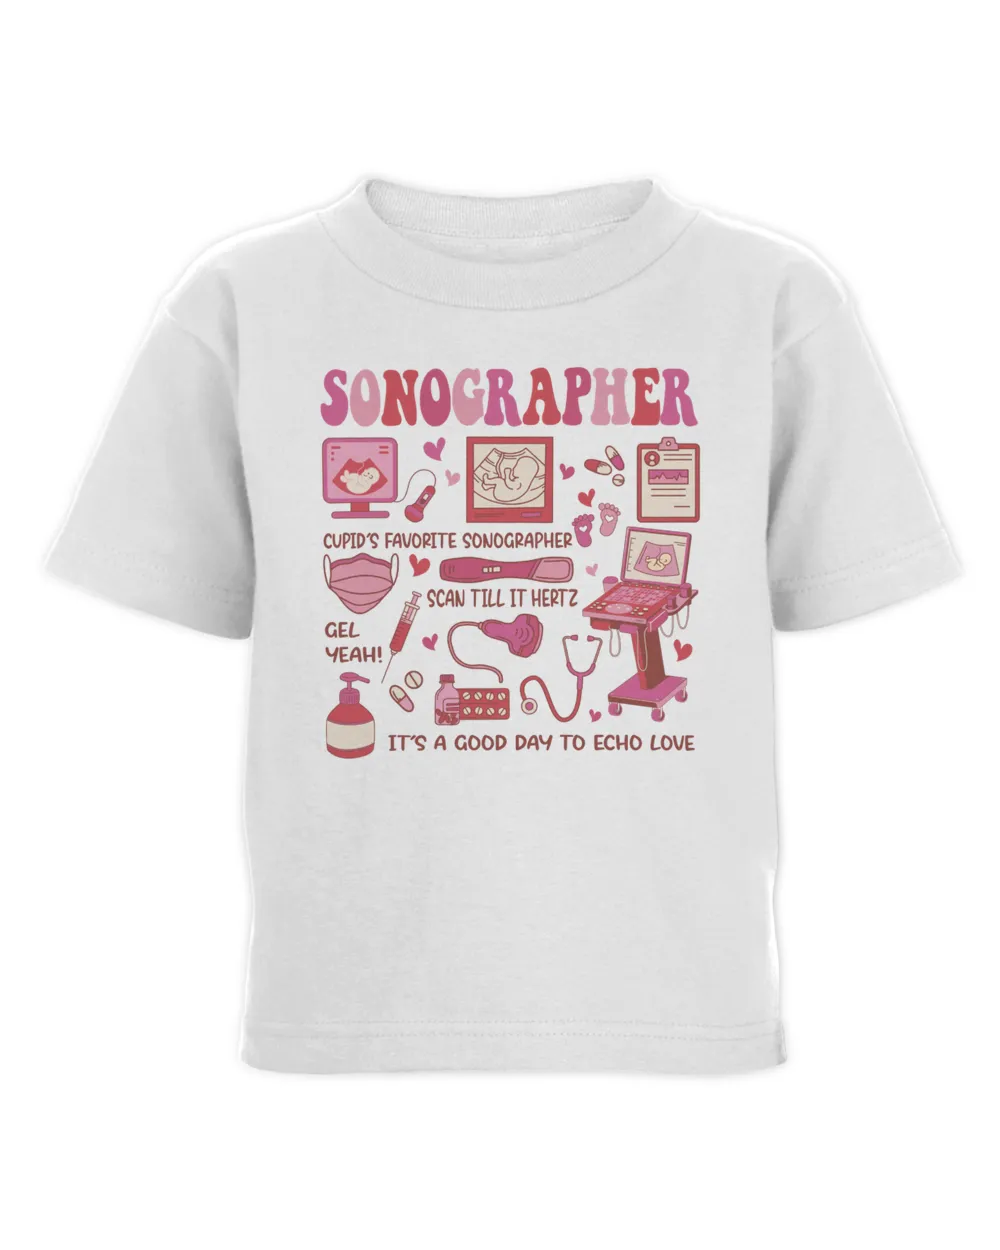 Sonographer Sweatshirt, Hoodies, Tote Bag, Canvas